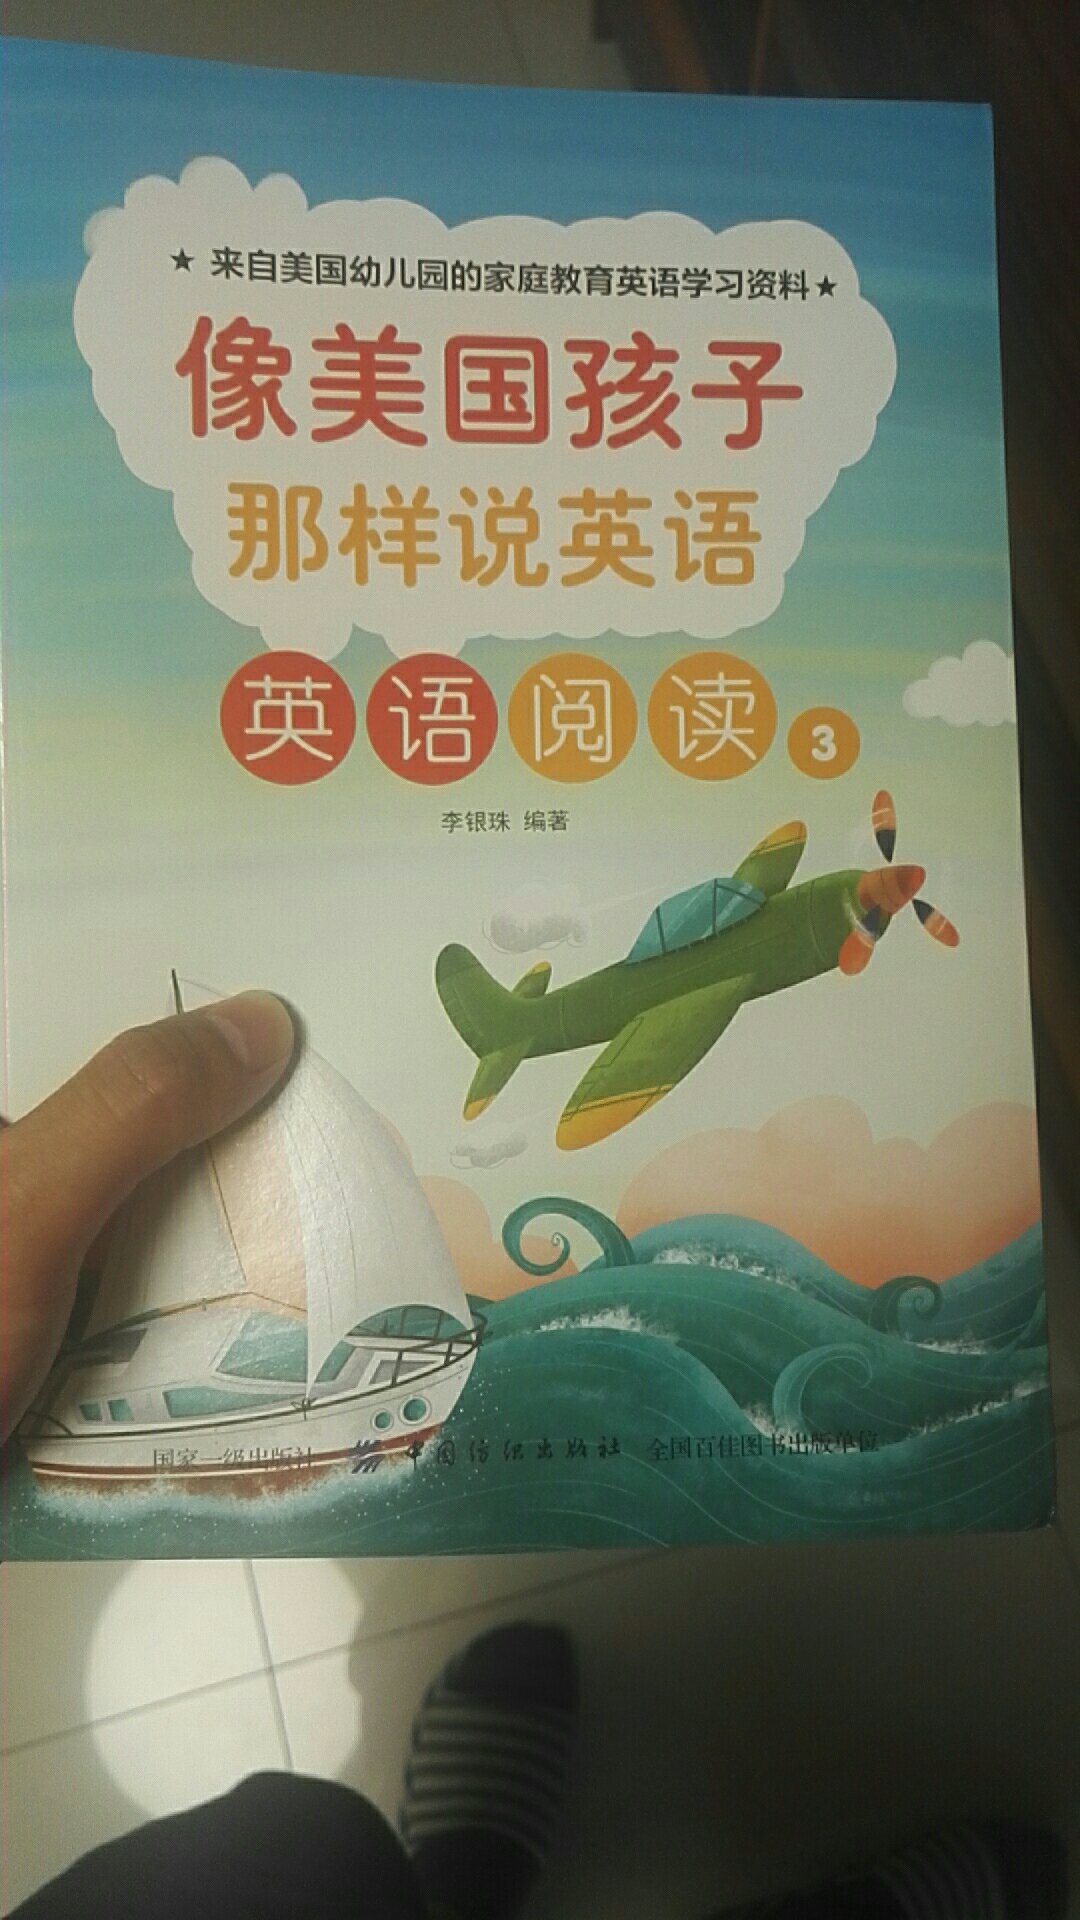 这书吧，对于幼儿园的小孩来说，感觉有点难度，语言环境是中文的，看着书不太合适，只是个人感觉。不过书本身是很好的